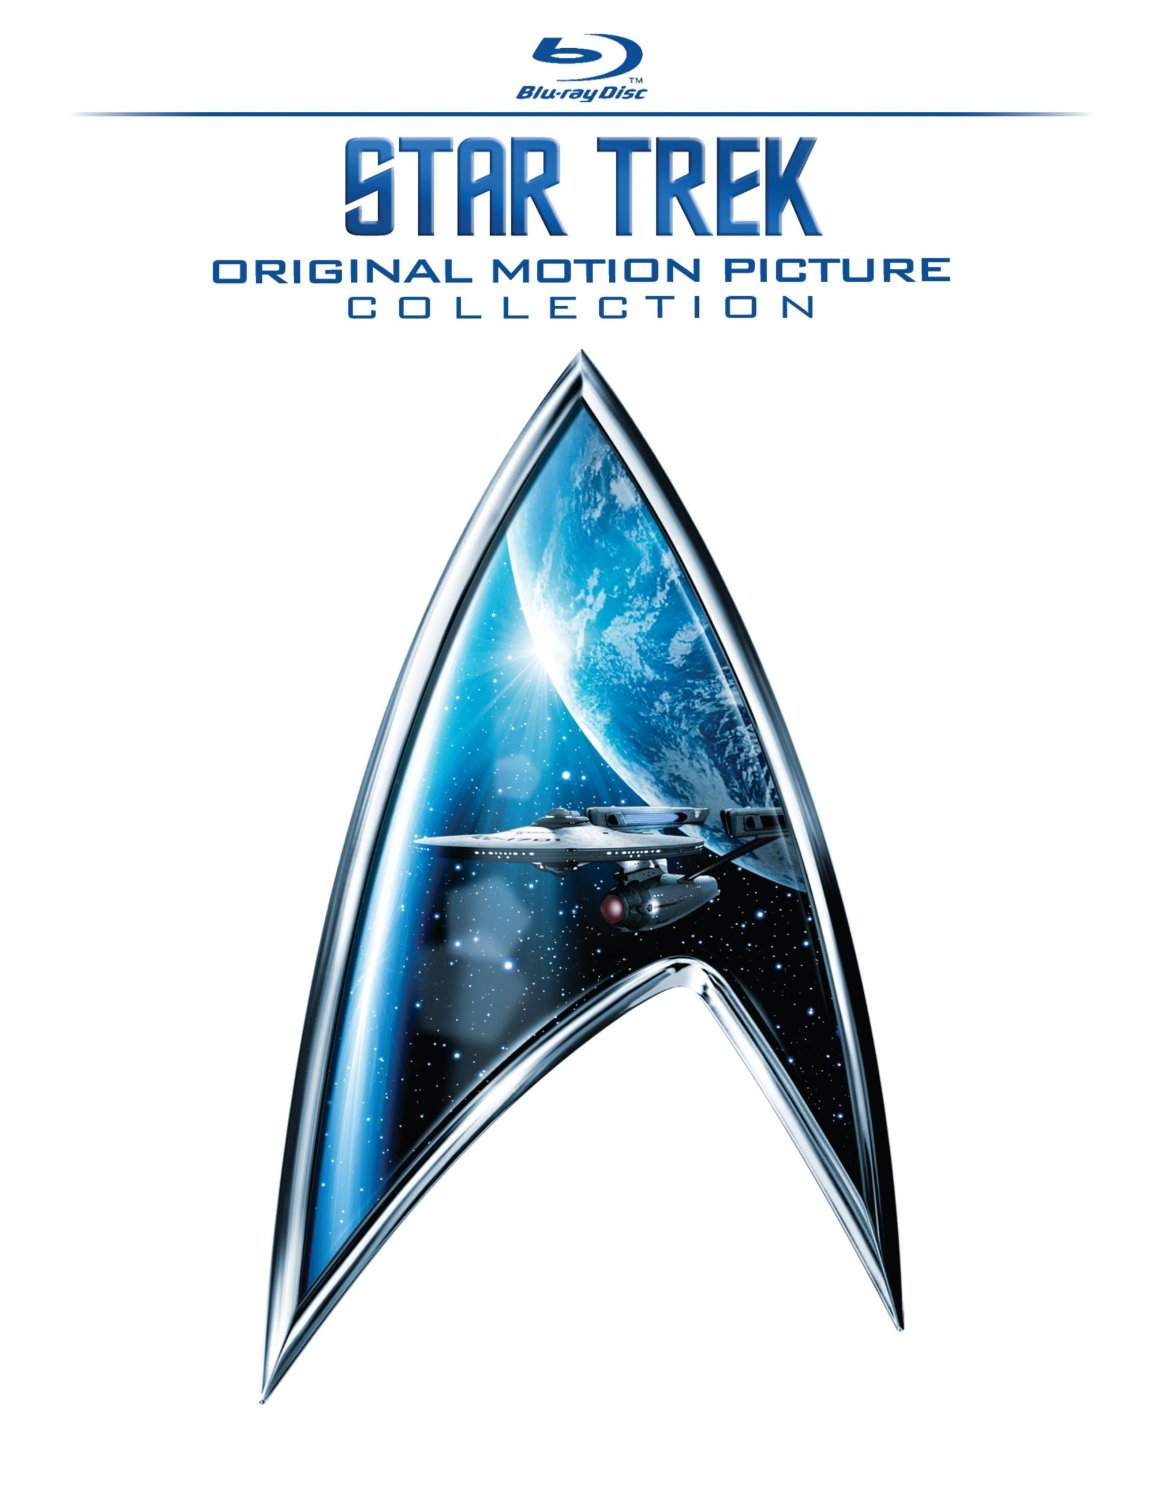 Star Trek Collection 720p DD 5.1 NL SubzZzZz